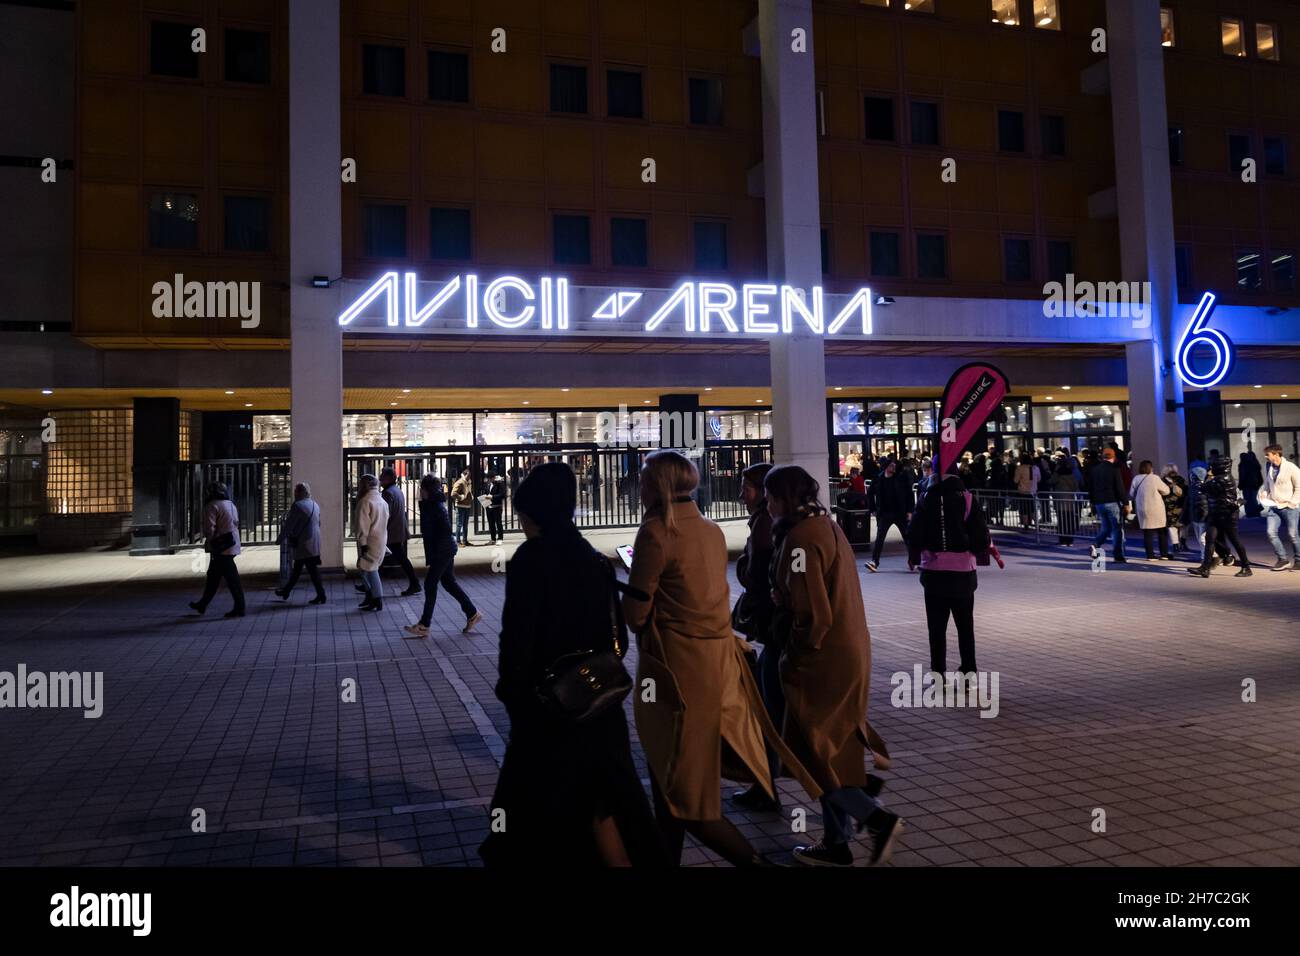 Avicii Arena, ursprünglich bekannt als Stockholm Globe Arena und dann Ericsson Globe Arena, ist das größte sphärische Gebäude der Welt Foto: Stina Stjernkv Stockfoto